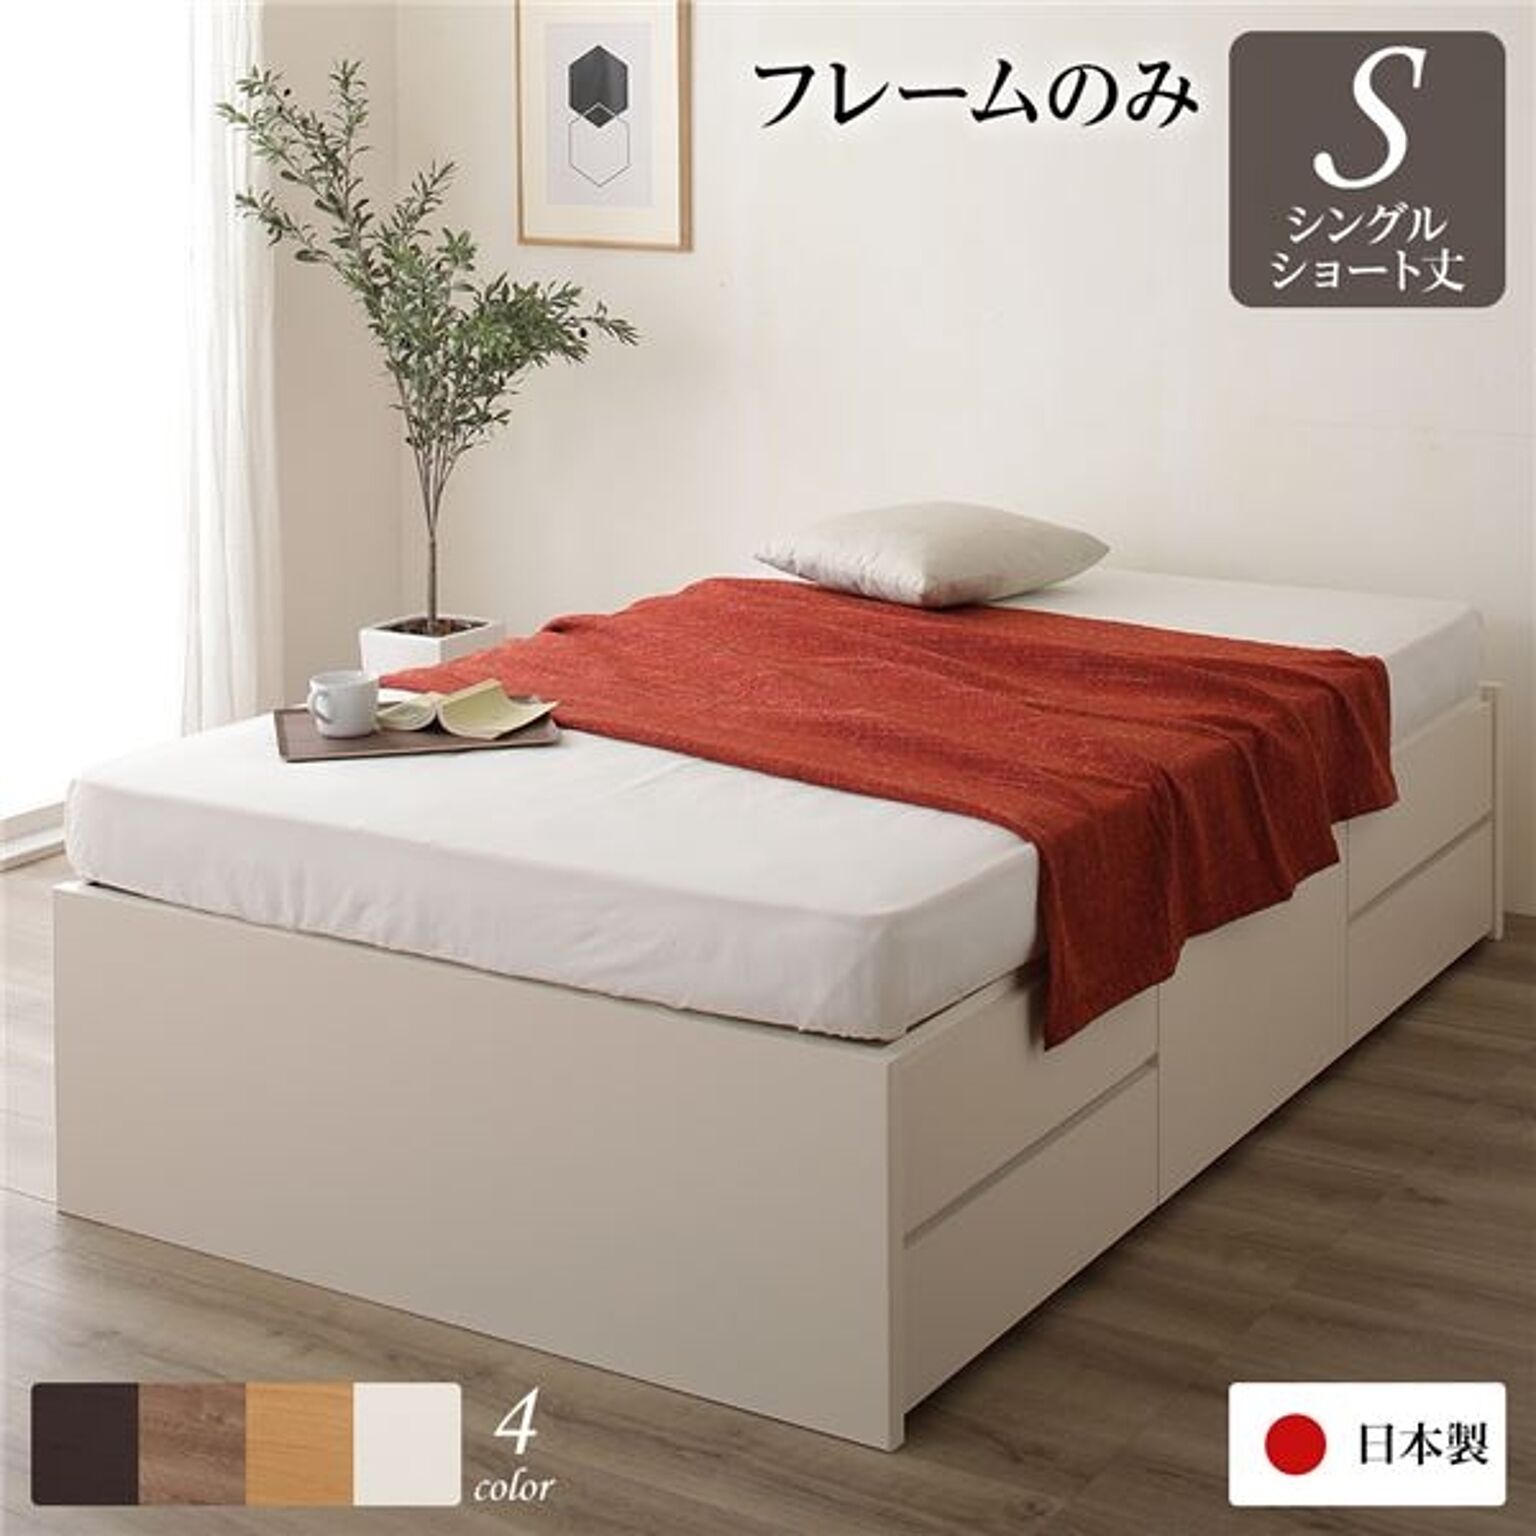 日本製 ヘッドレス 収納ベッド シングル ショート丈 引き出し収納 アイボリー